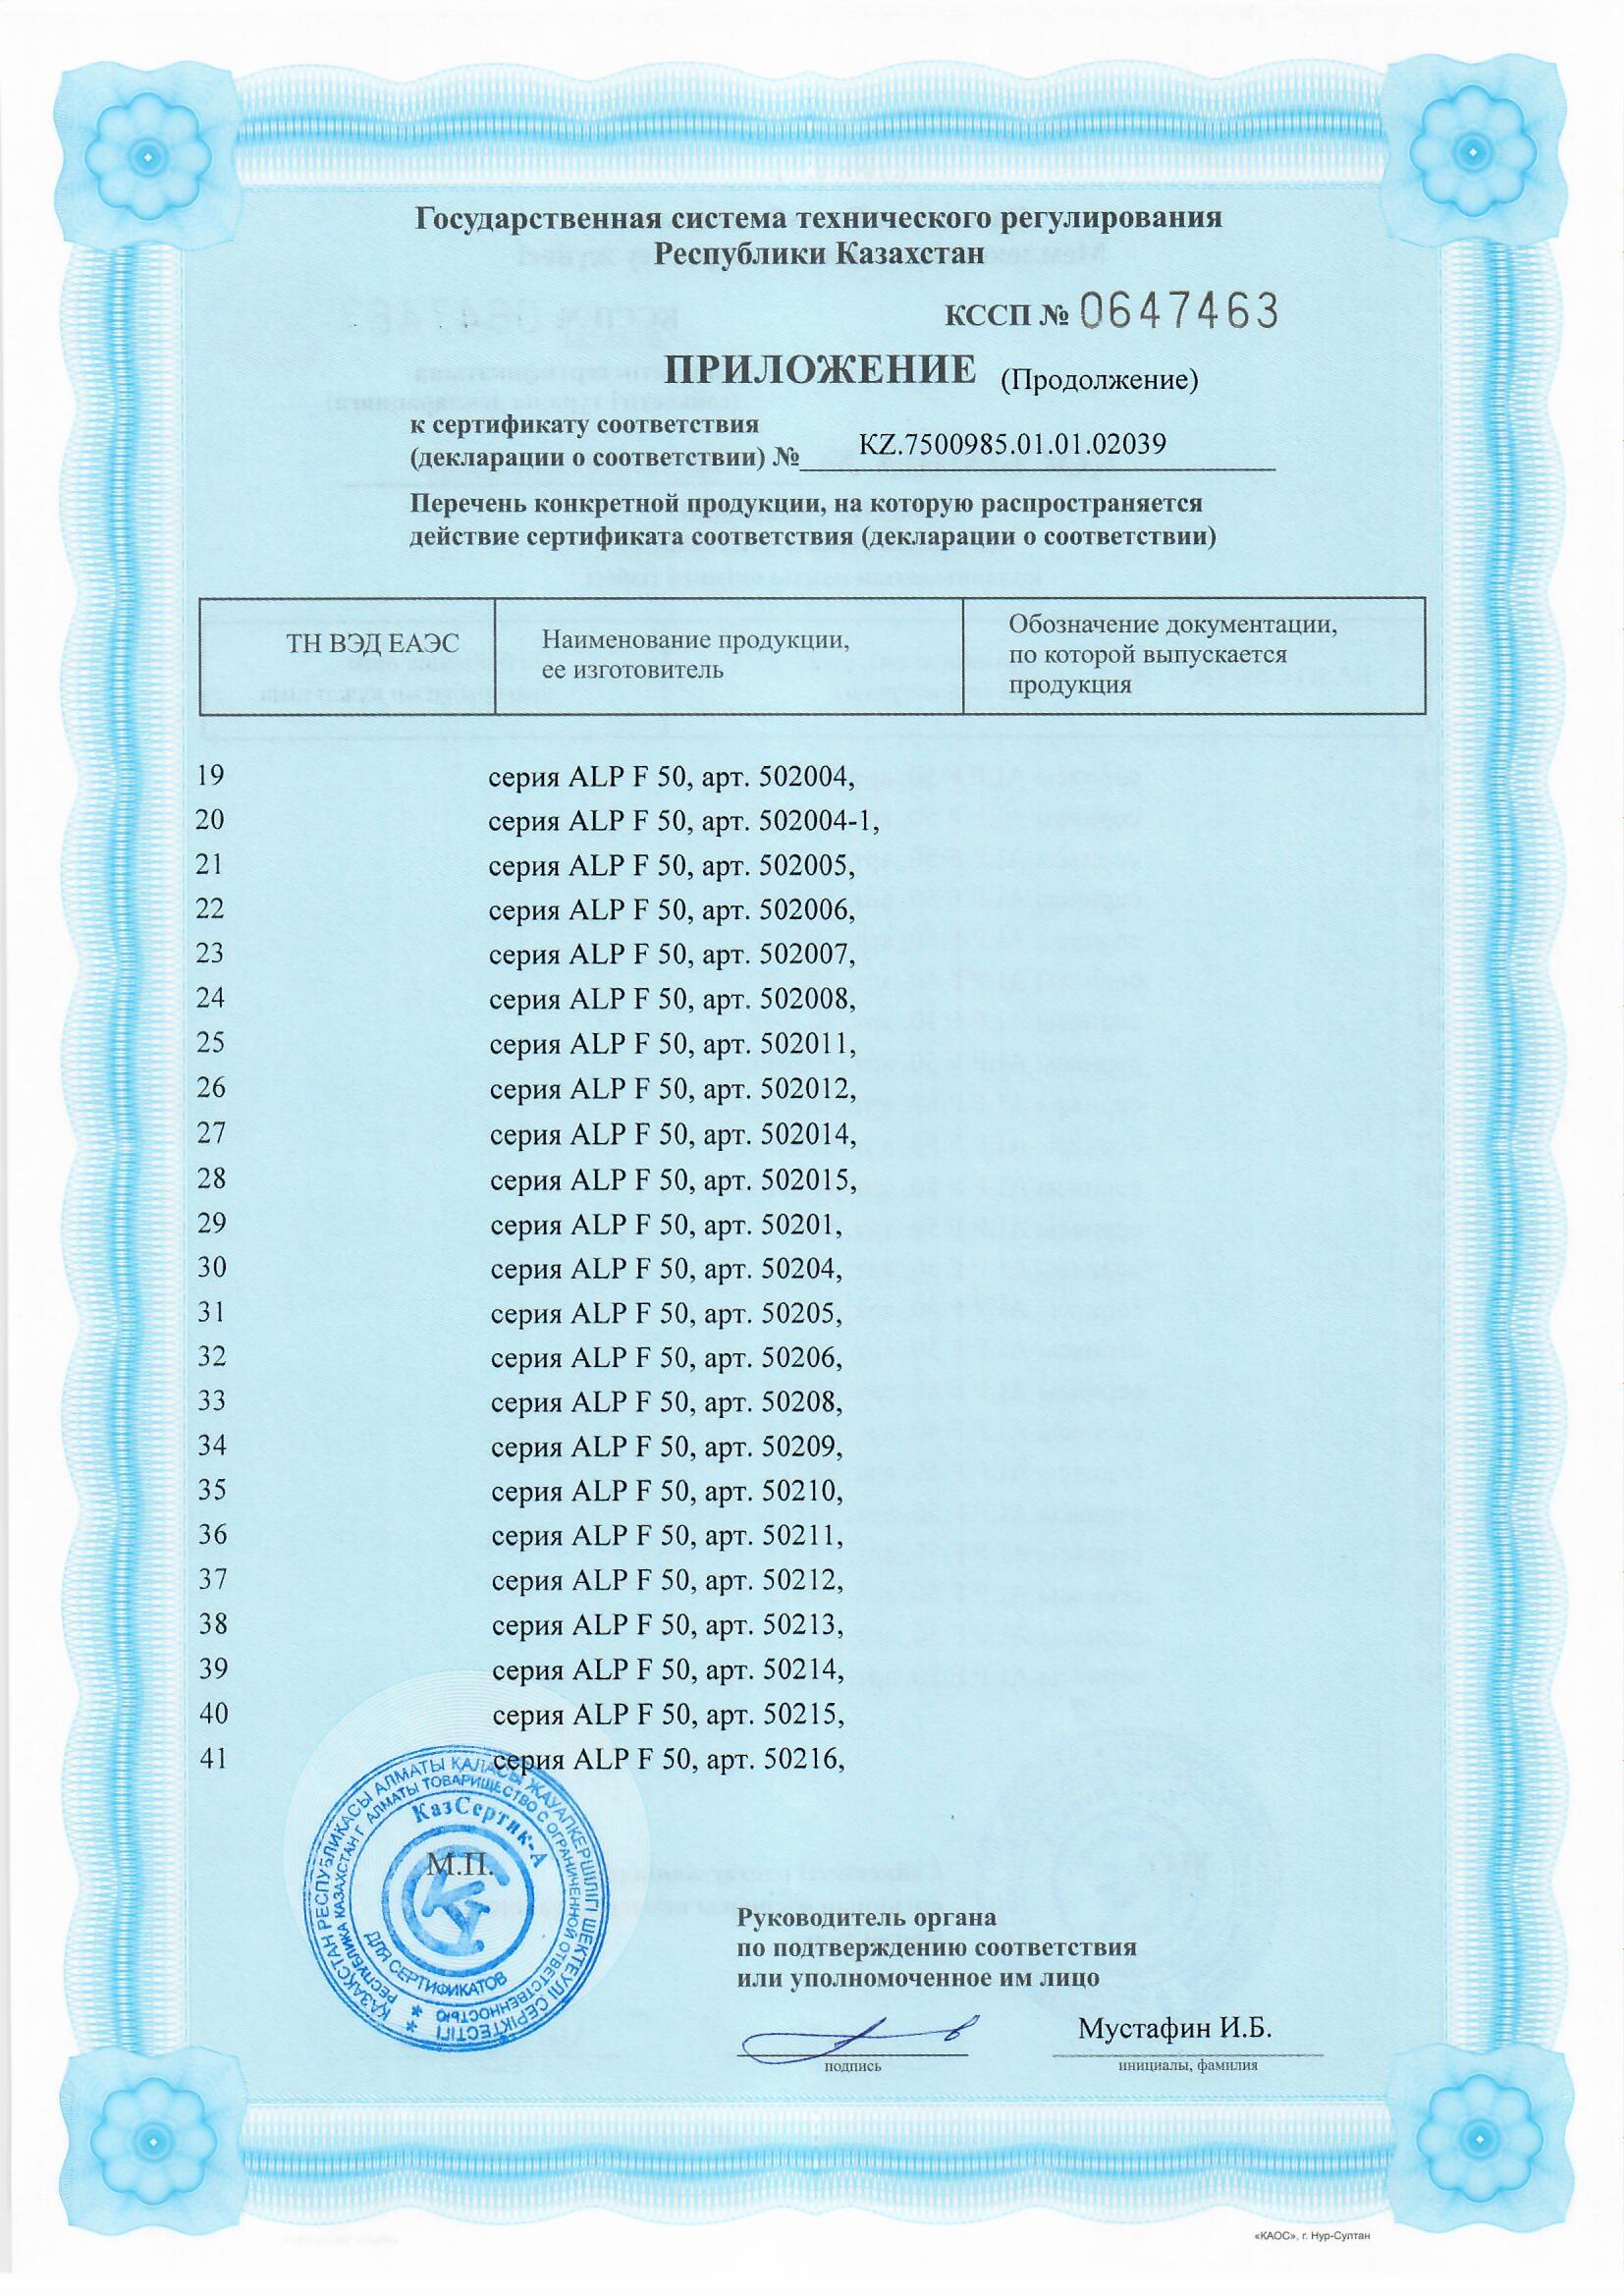 Сертификат на серию ALP F 50